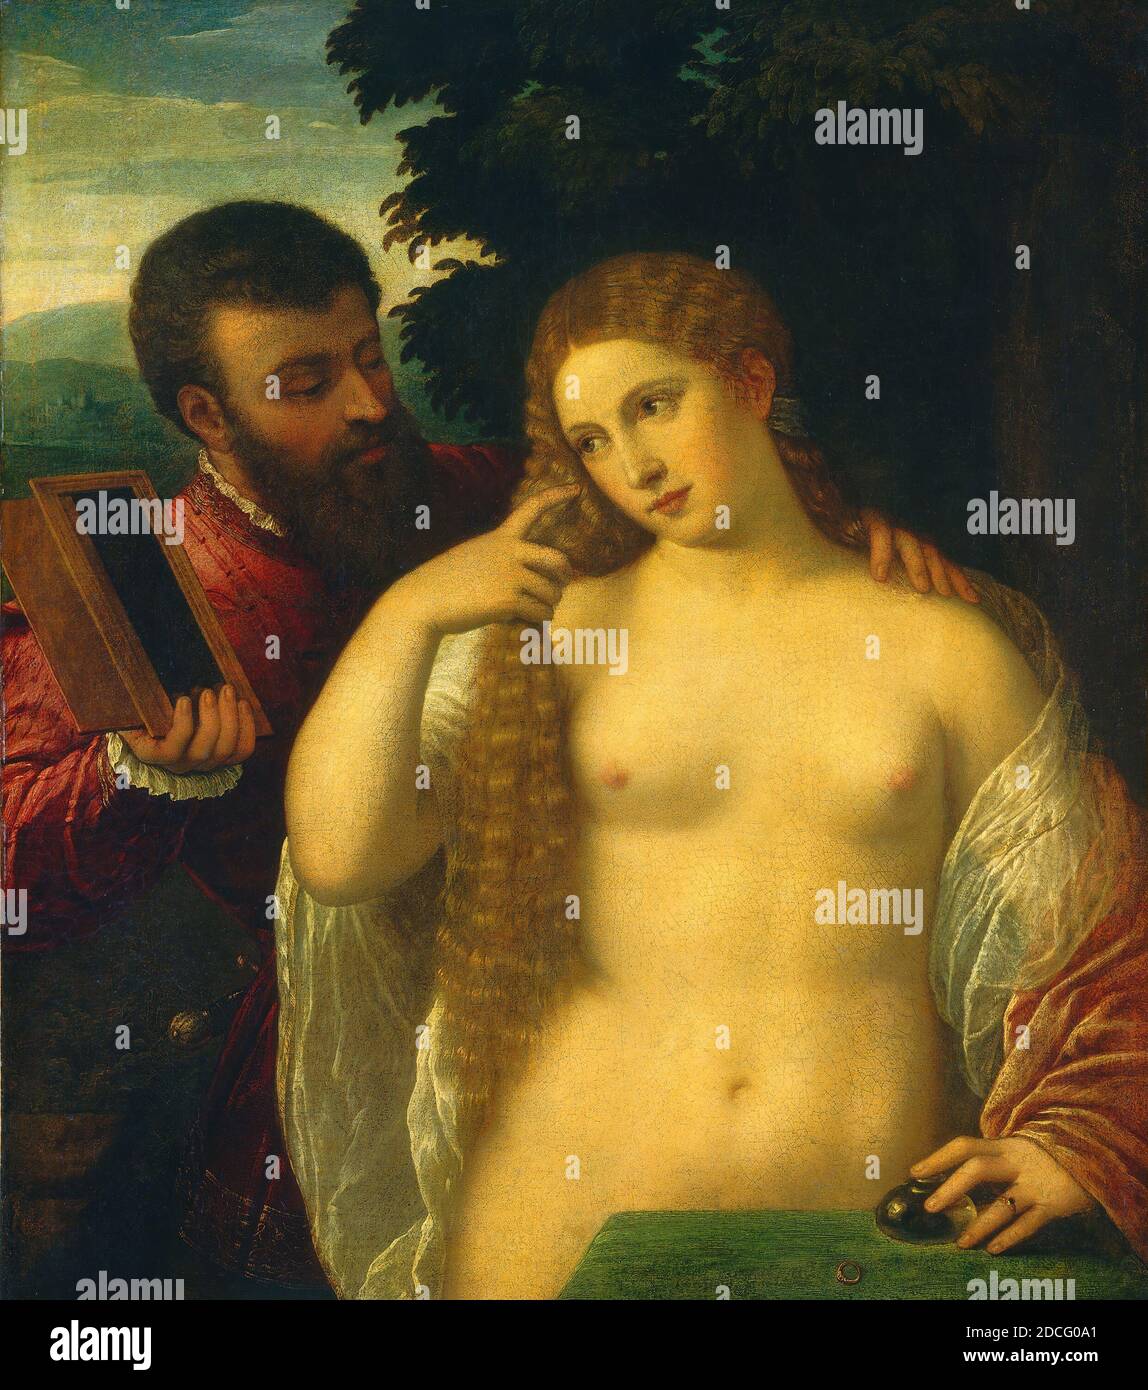 Italien du XVe/XVIe siècle, (peintre), Titien, (artiste apparenté), vénitien, 1488/1490 - 1576, Allegory of Love, c. 1520/1540, huile sur toile, hors tout : 91.4 x 81.9 cm (36 x 32 1/4 po Banque D'Images